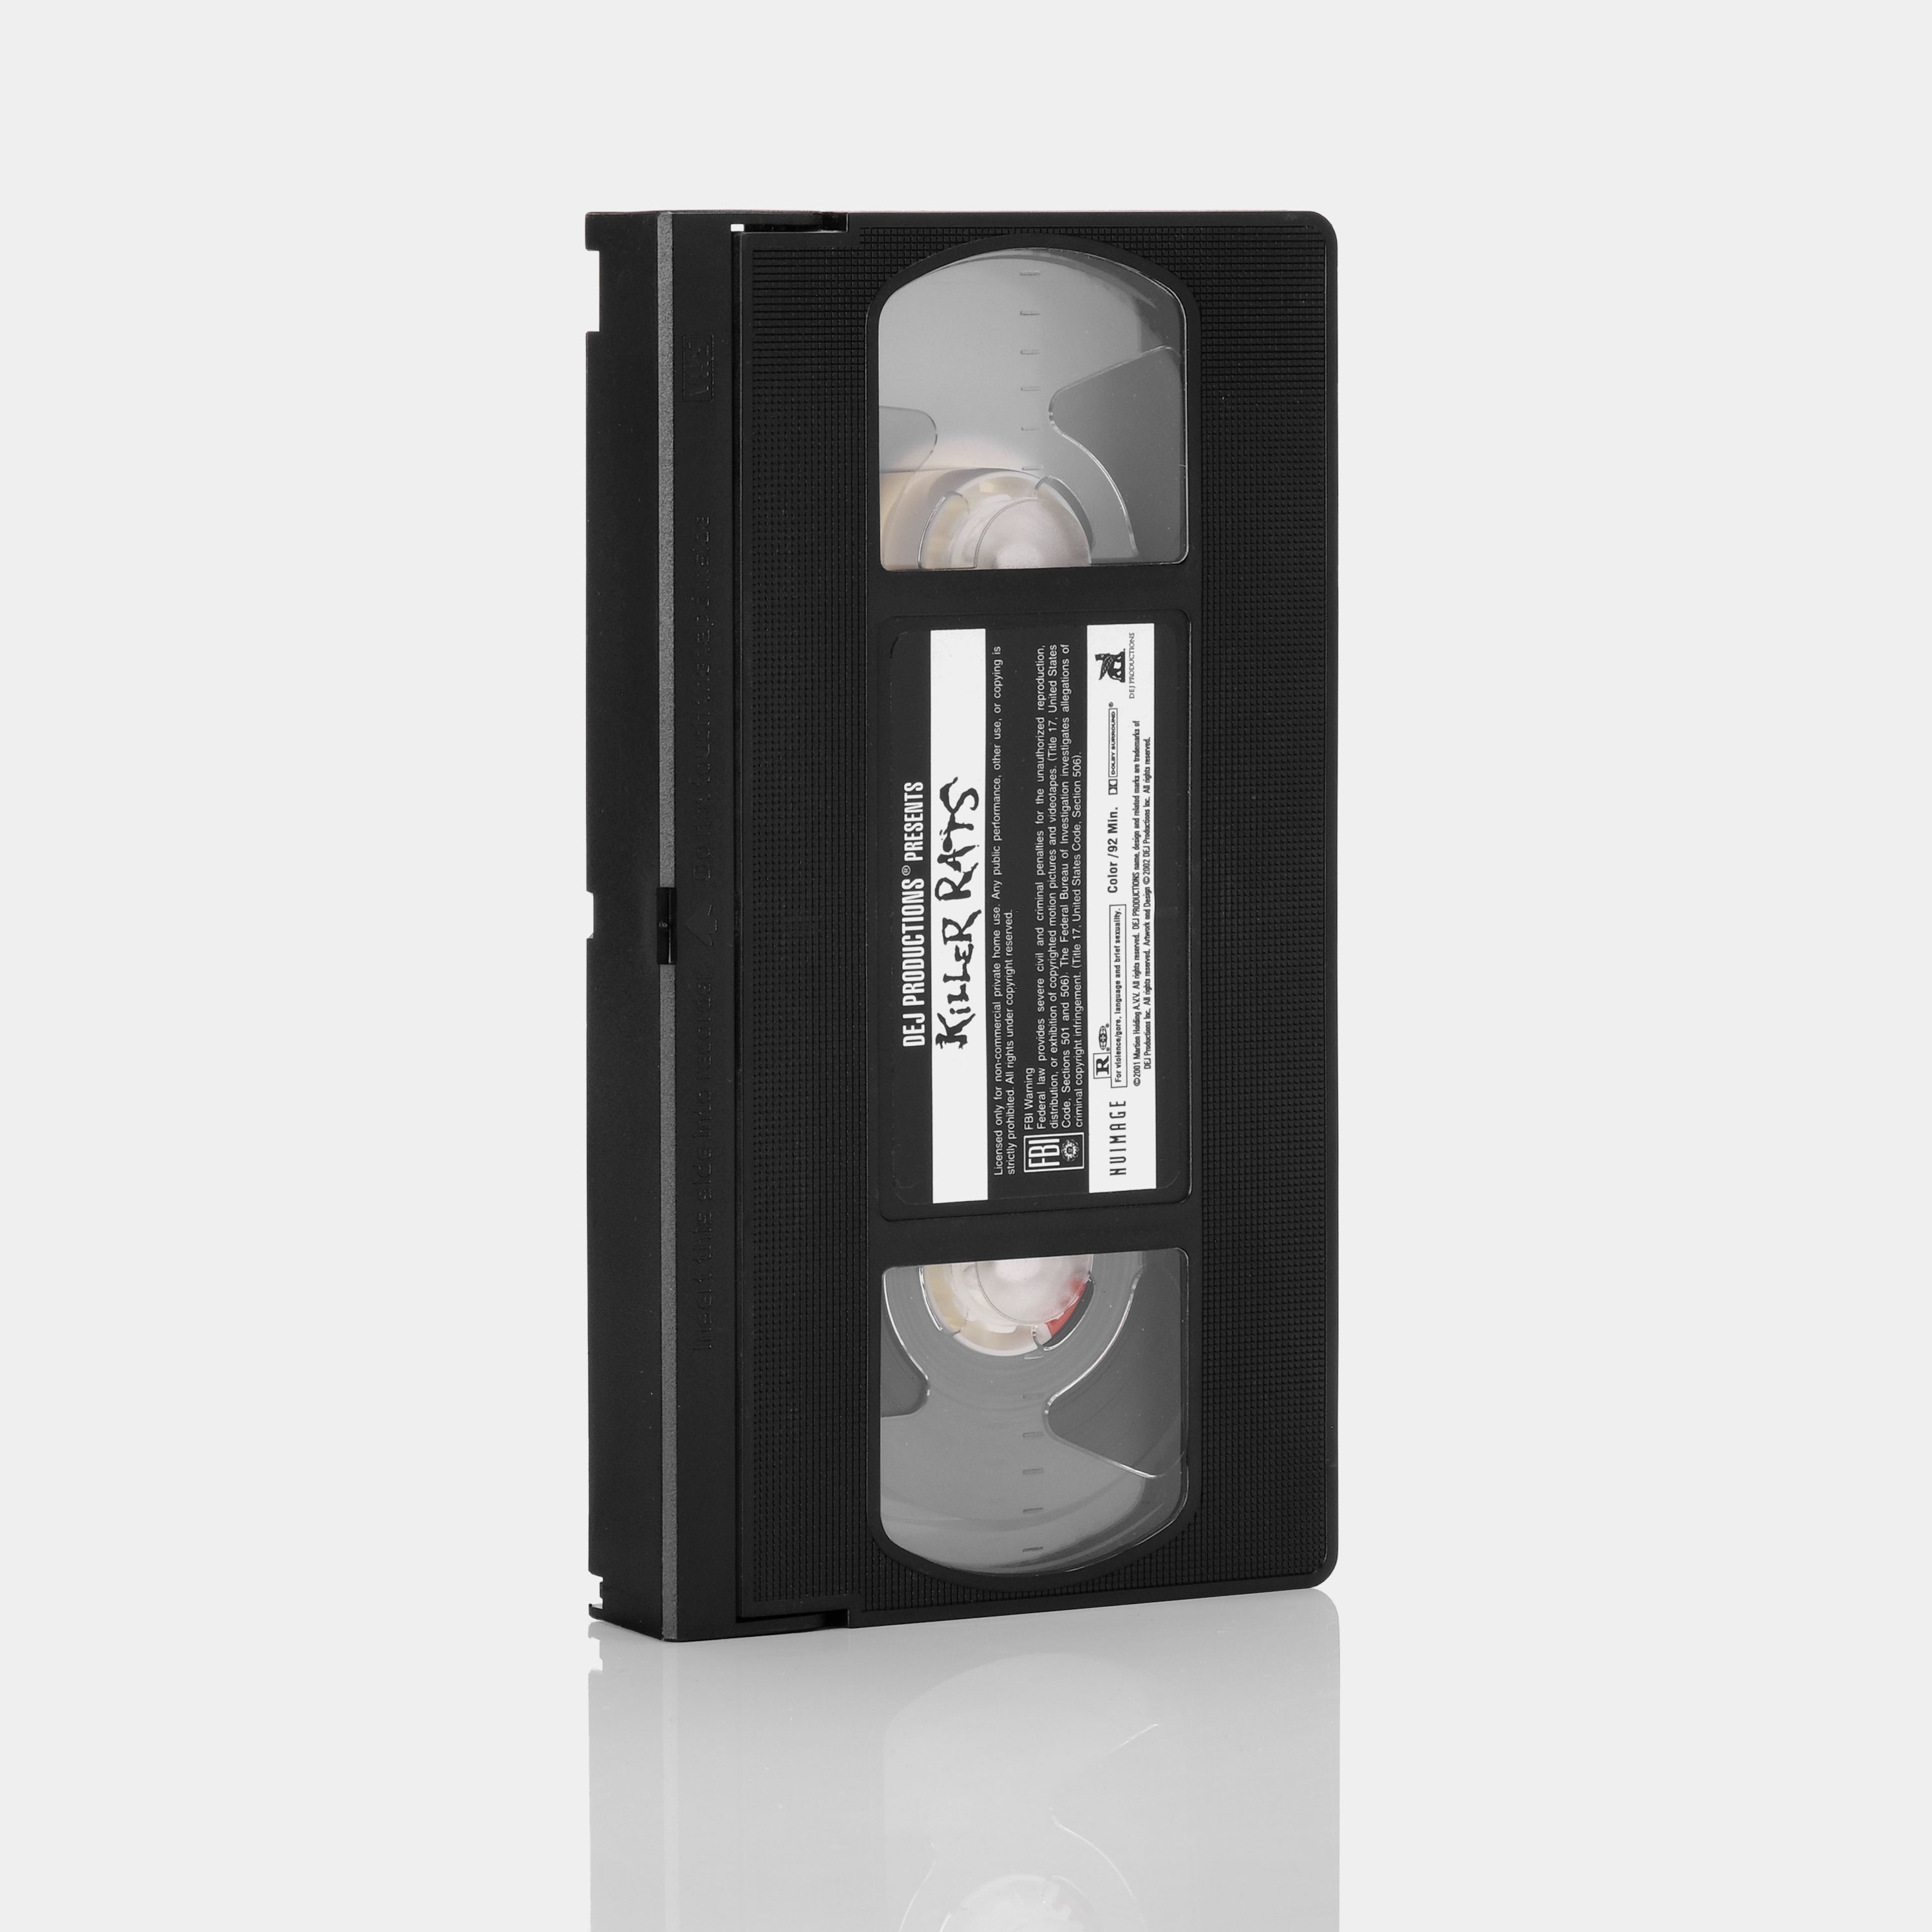 Killer Rats VHS Tape